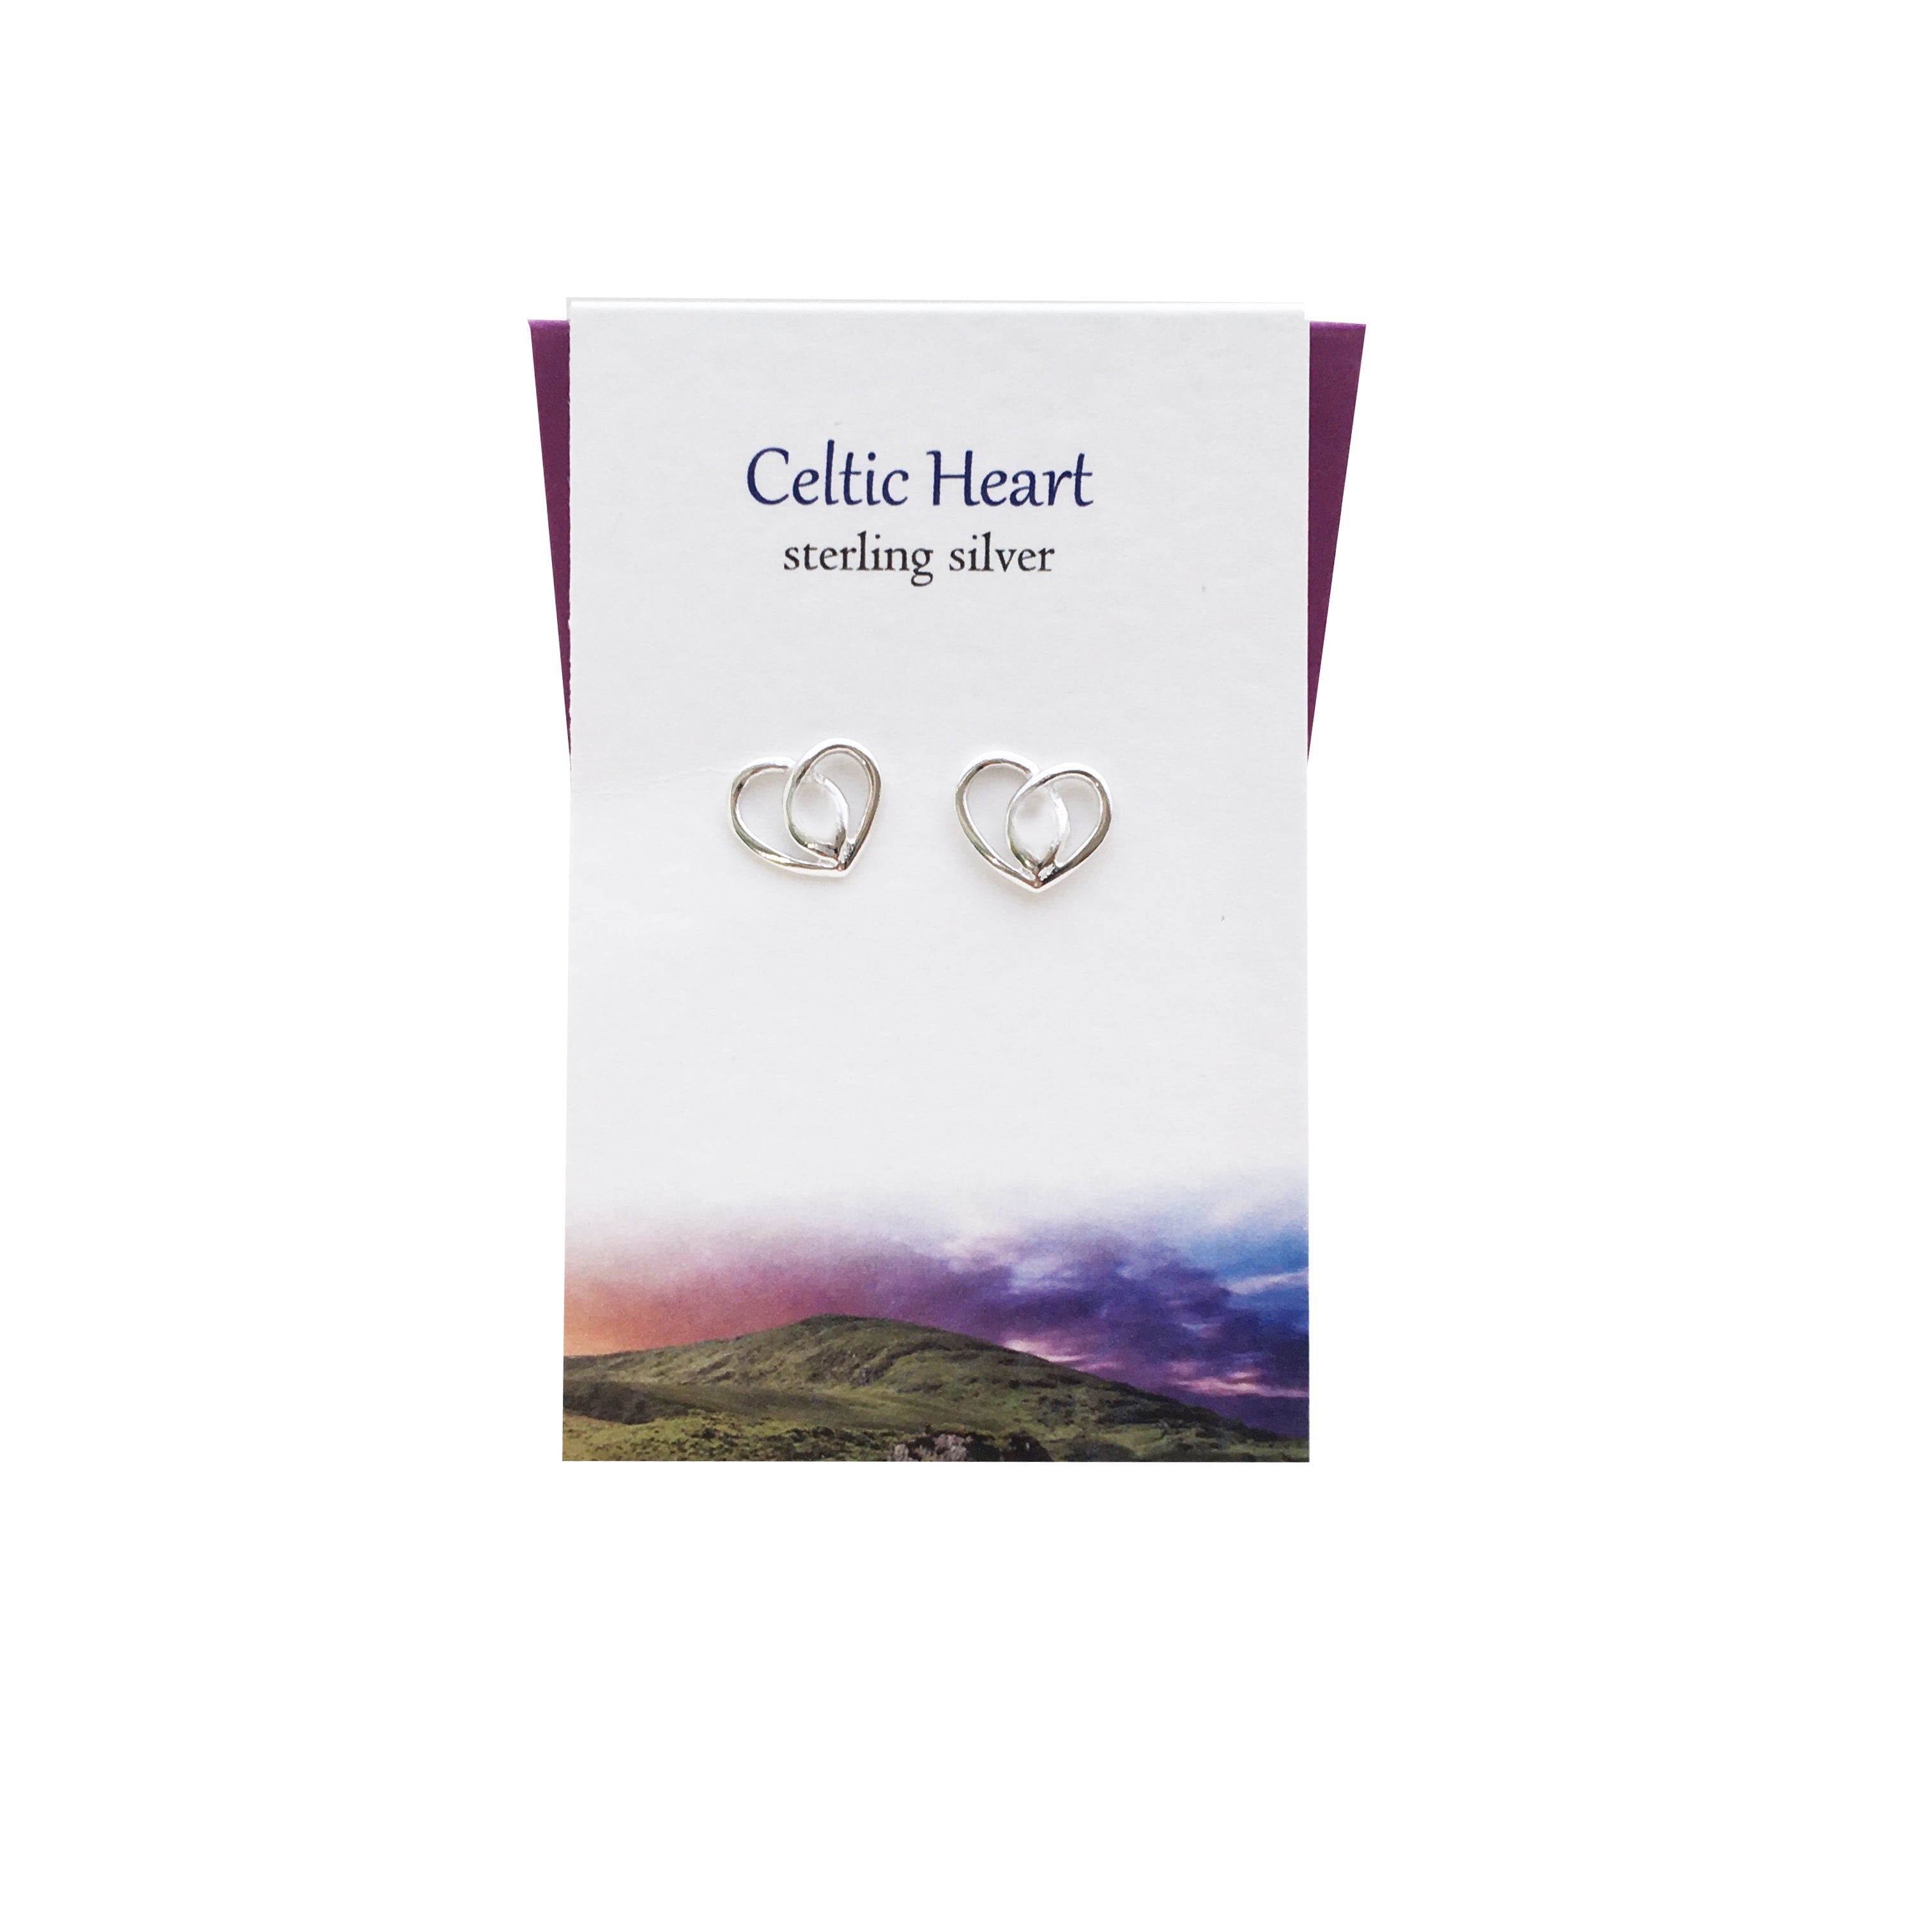 Celtic Heart silver stud earrings| The Silver Studio Scotland